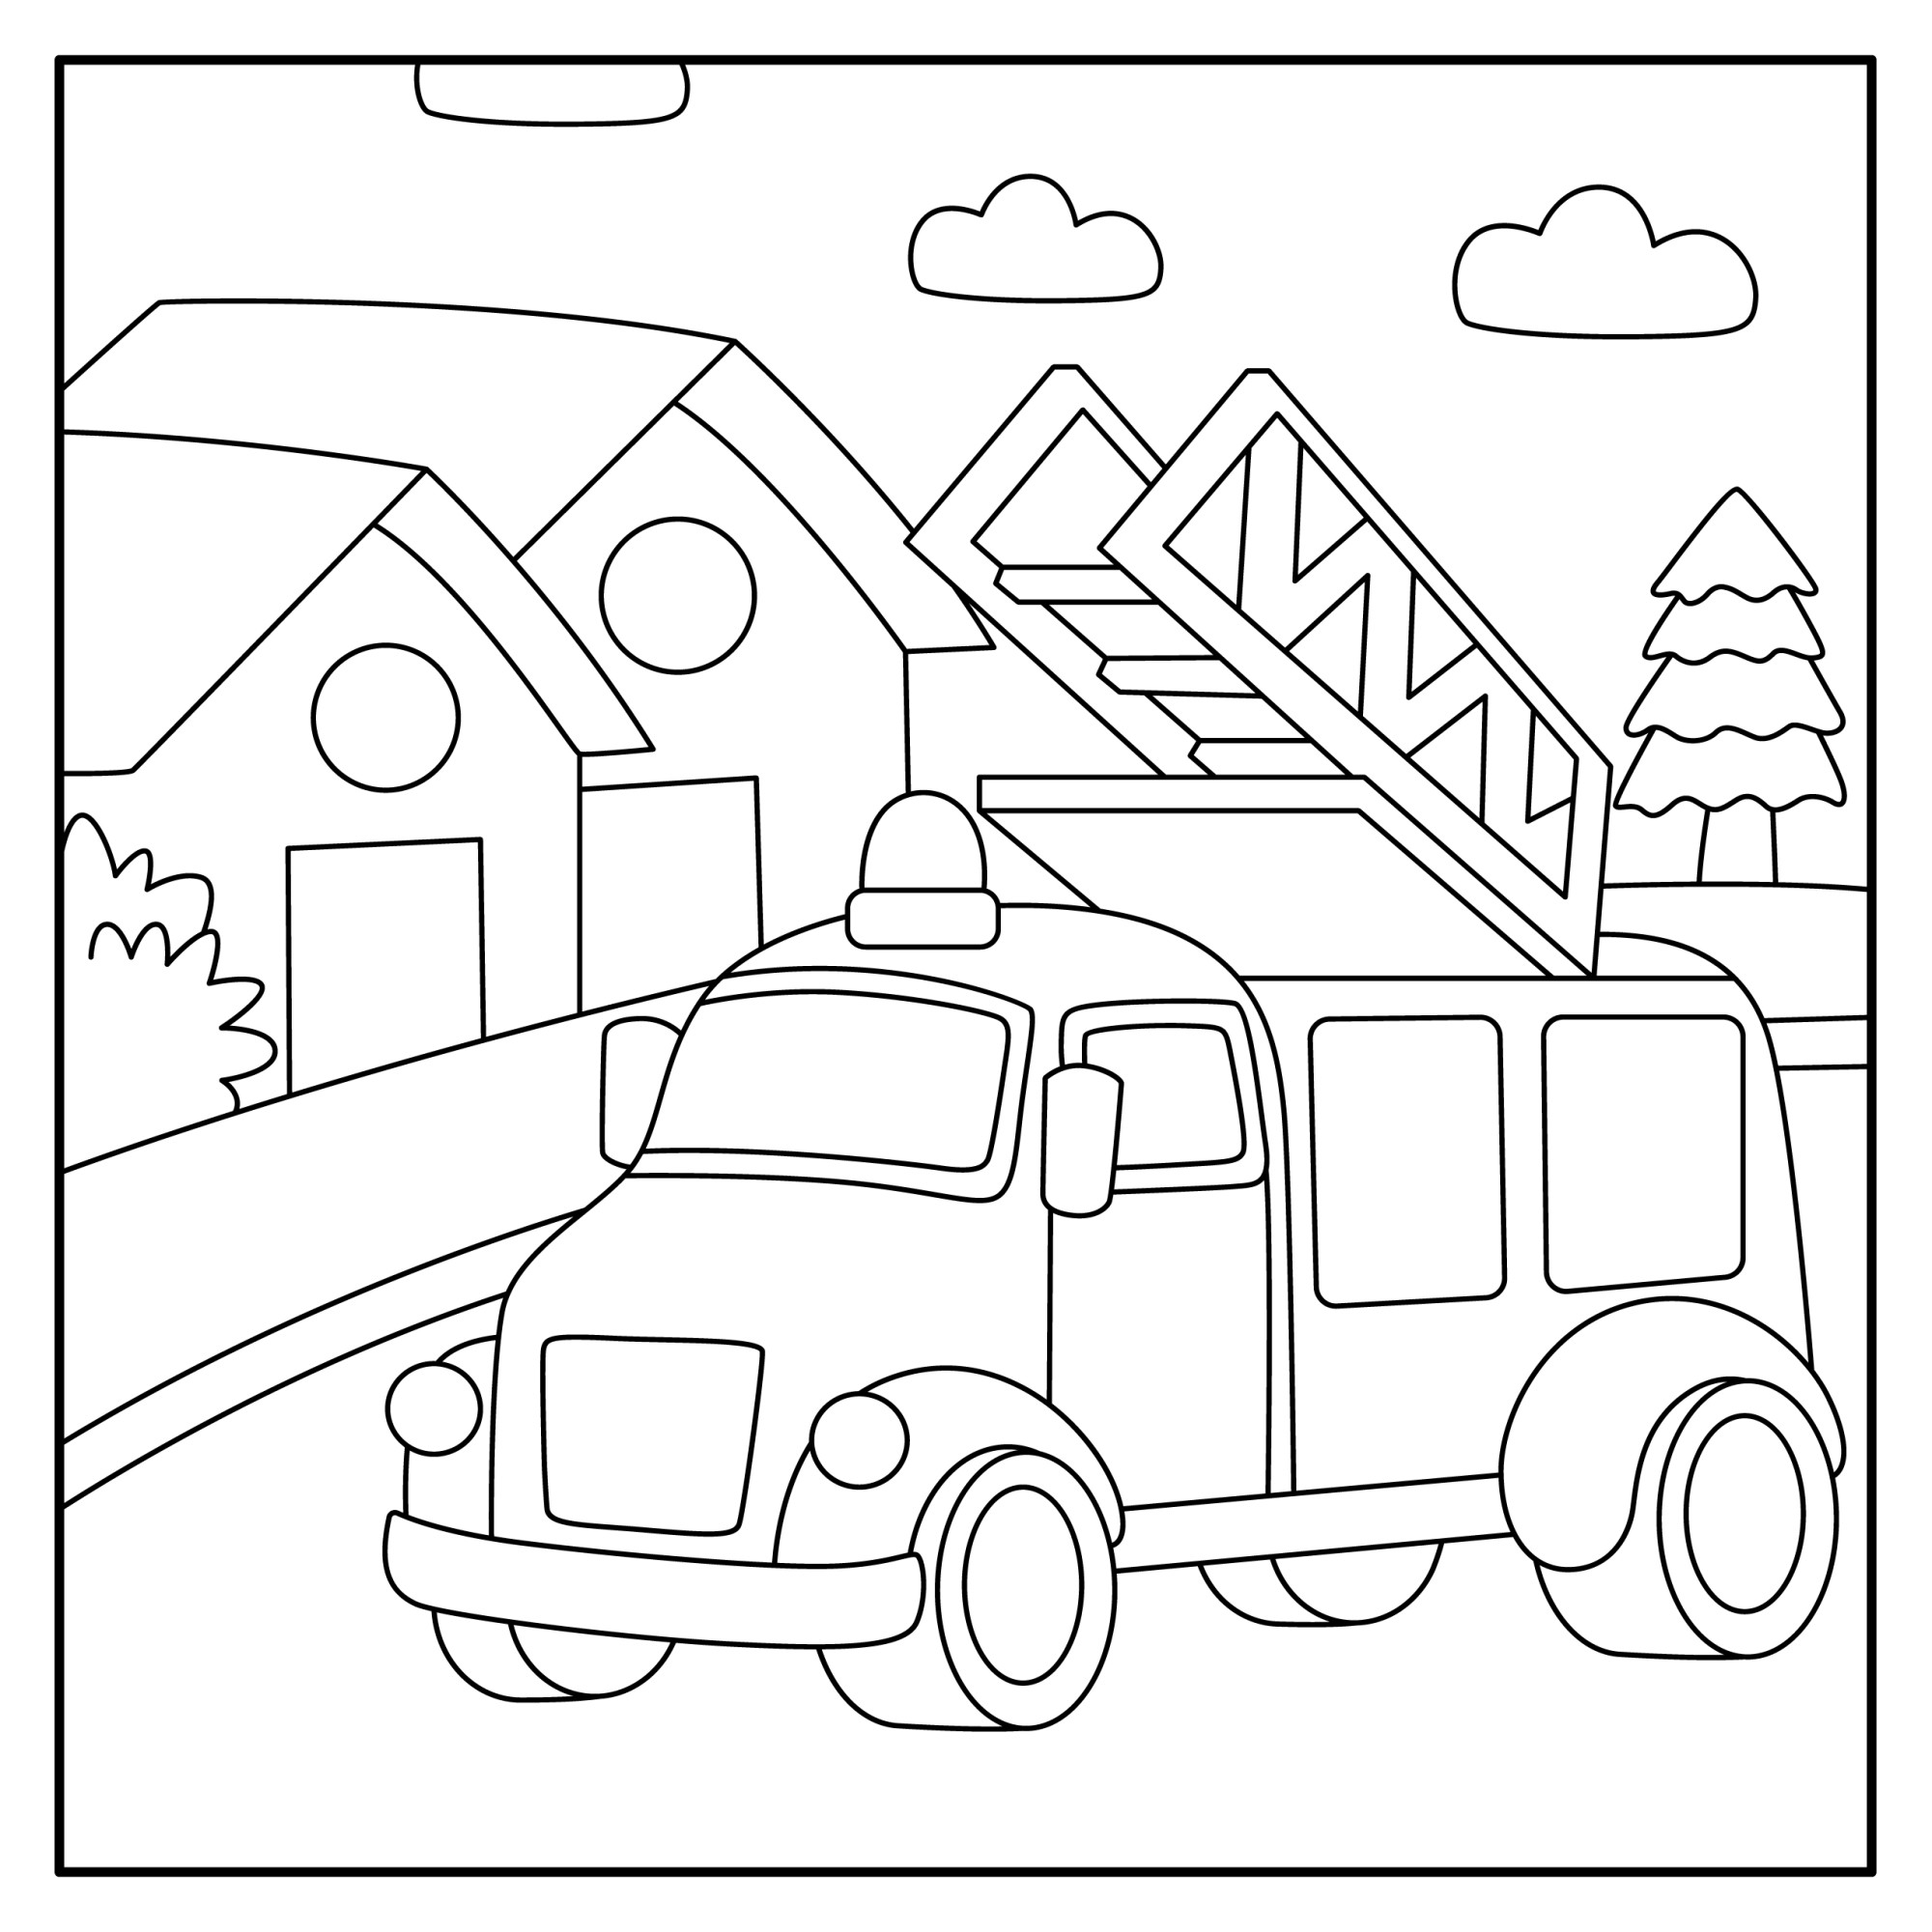 Раскраска для детей: пожарная машина с лестницей на фоне домов